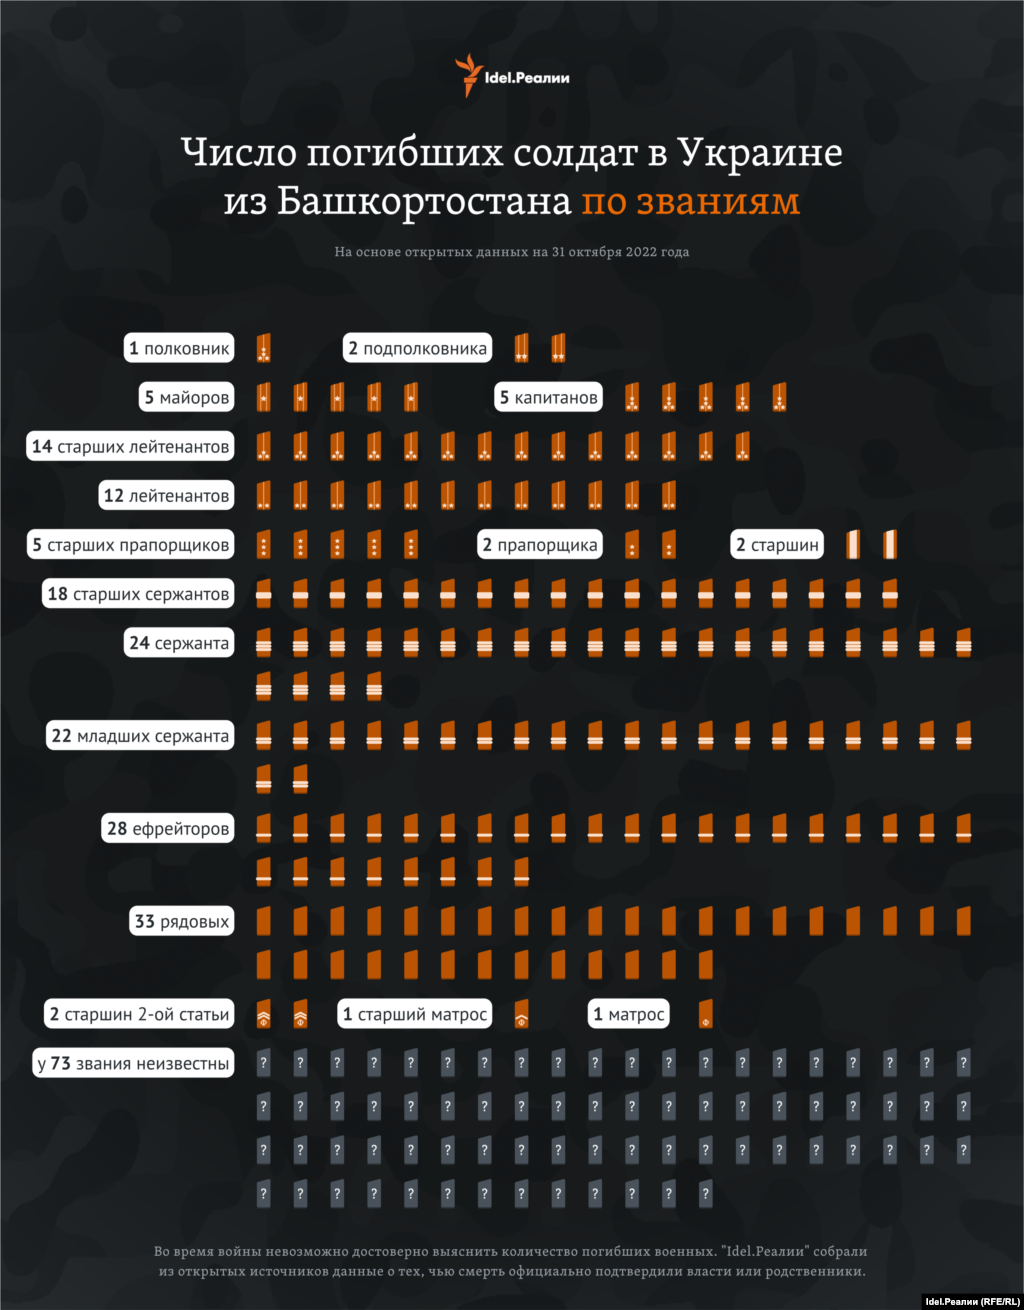 Если рассмотреть погибших в Украине башкортостанцев по званиям, то вырисовывается следующая картина: значительное число приходится на лейтенантов и старших лейтенантов.